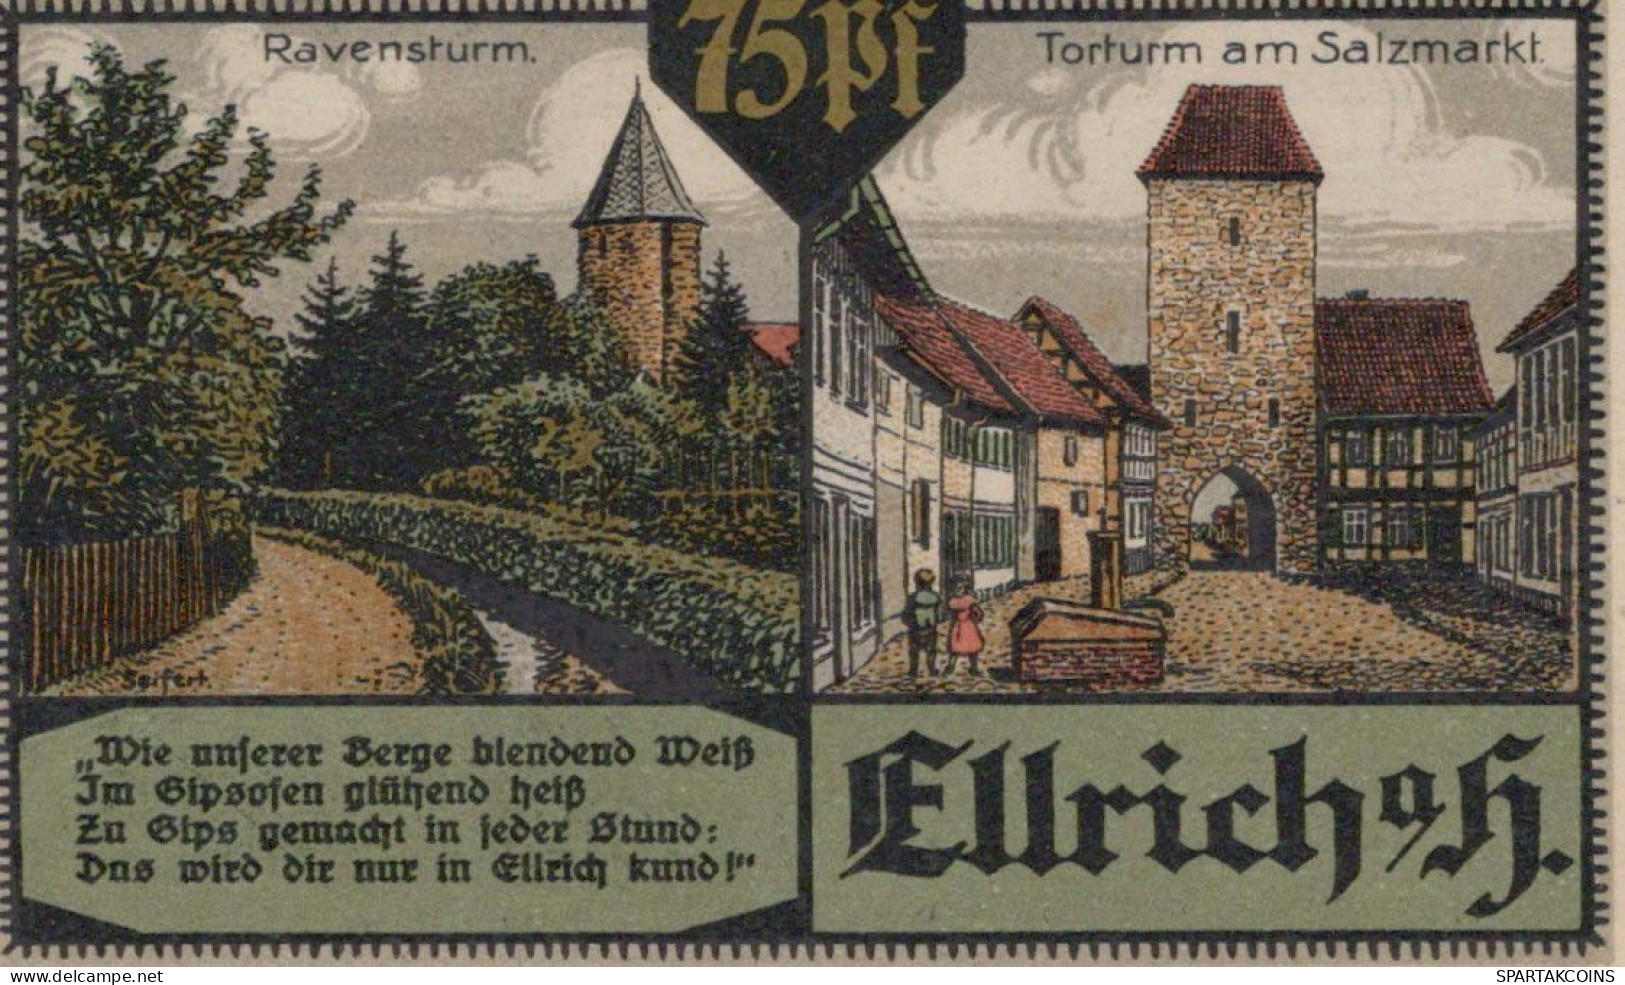 75 PFENNIG 1921 Stadt ELLRICH Saxony UNC DEUTSCHLAND Notgeld Banknote #PB199 - [11] Emissions Locales